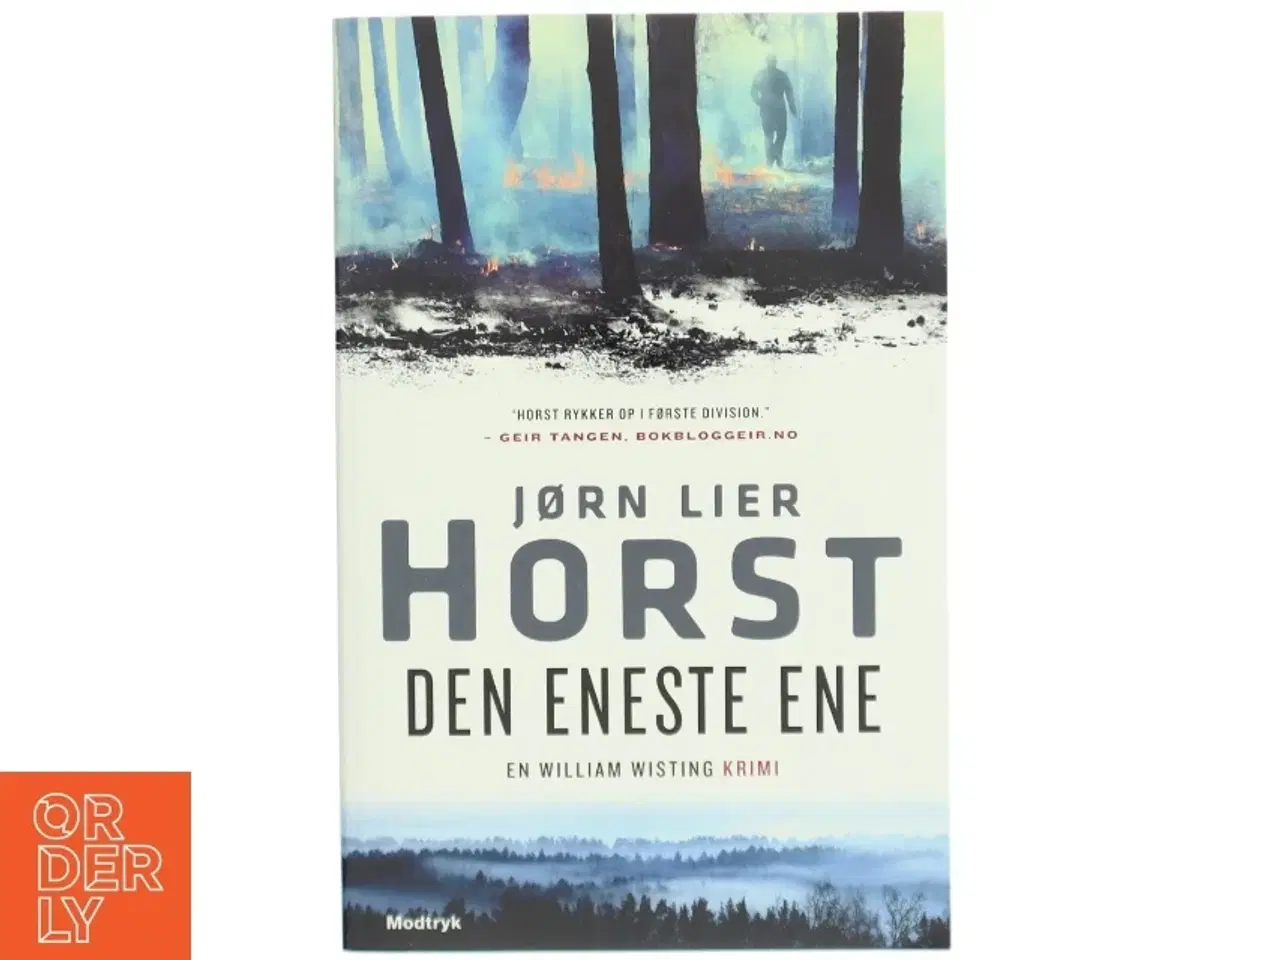 Billede 1 - 'Den eneste ene' af Jørn Lier Horst (bog)